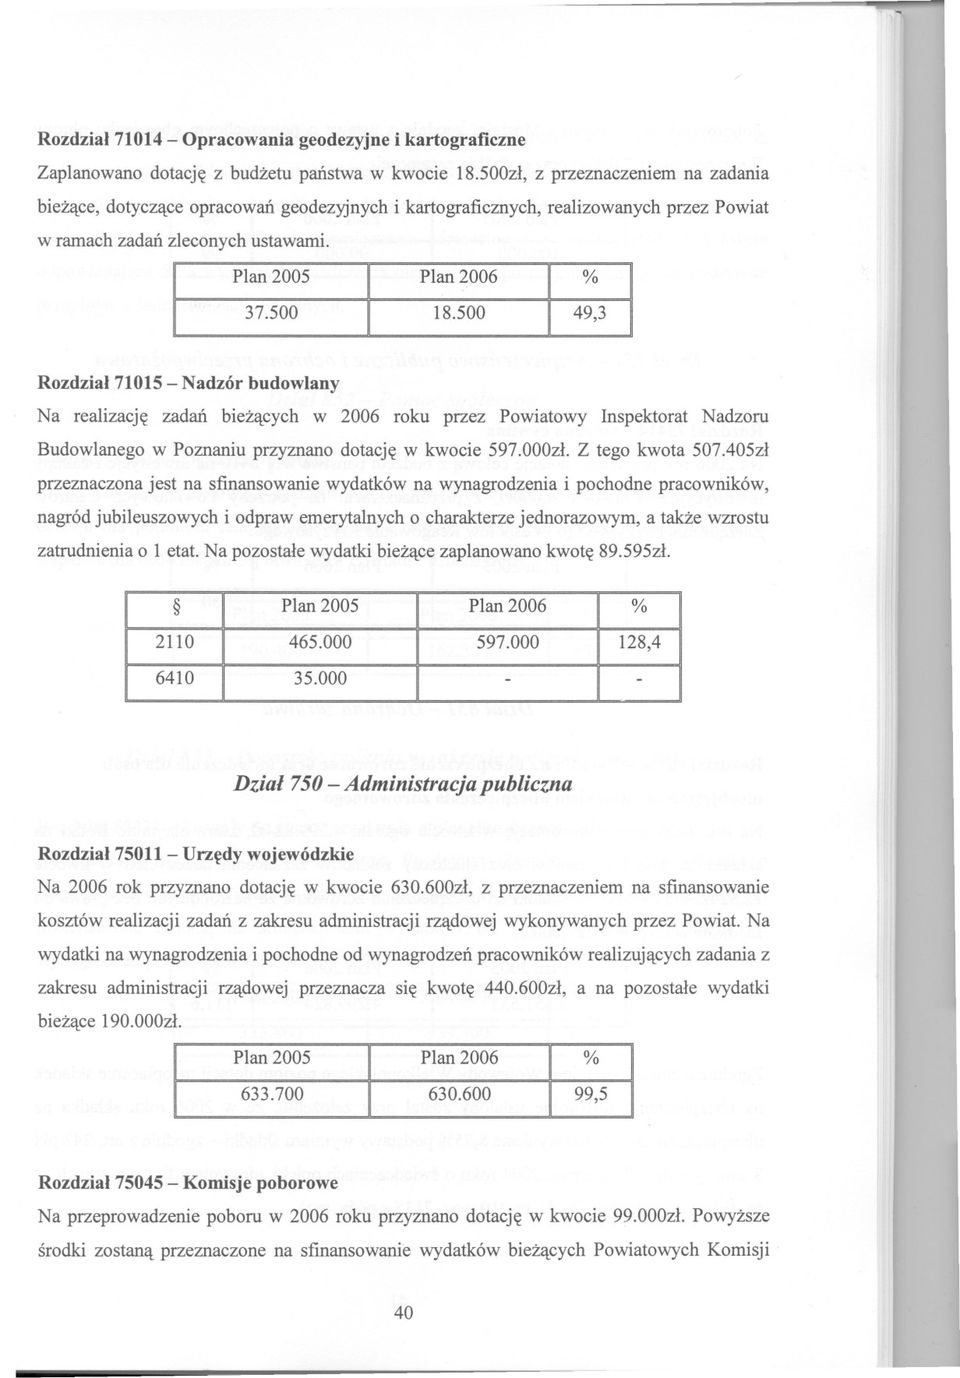 500 49,3 Rozdzial71015 - Nadzór budowlany Na realizacje zadan biezacych w 2006 roku przez Powiatowy nspektorat Nadzoru Budowlanego w Poznaniu przyznano dotacje w kwocie 597.000zl. Z tego kwota 507.